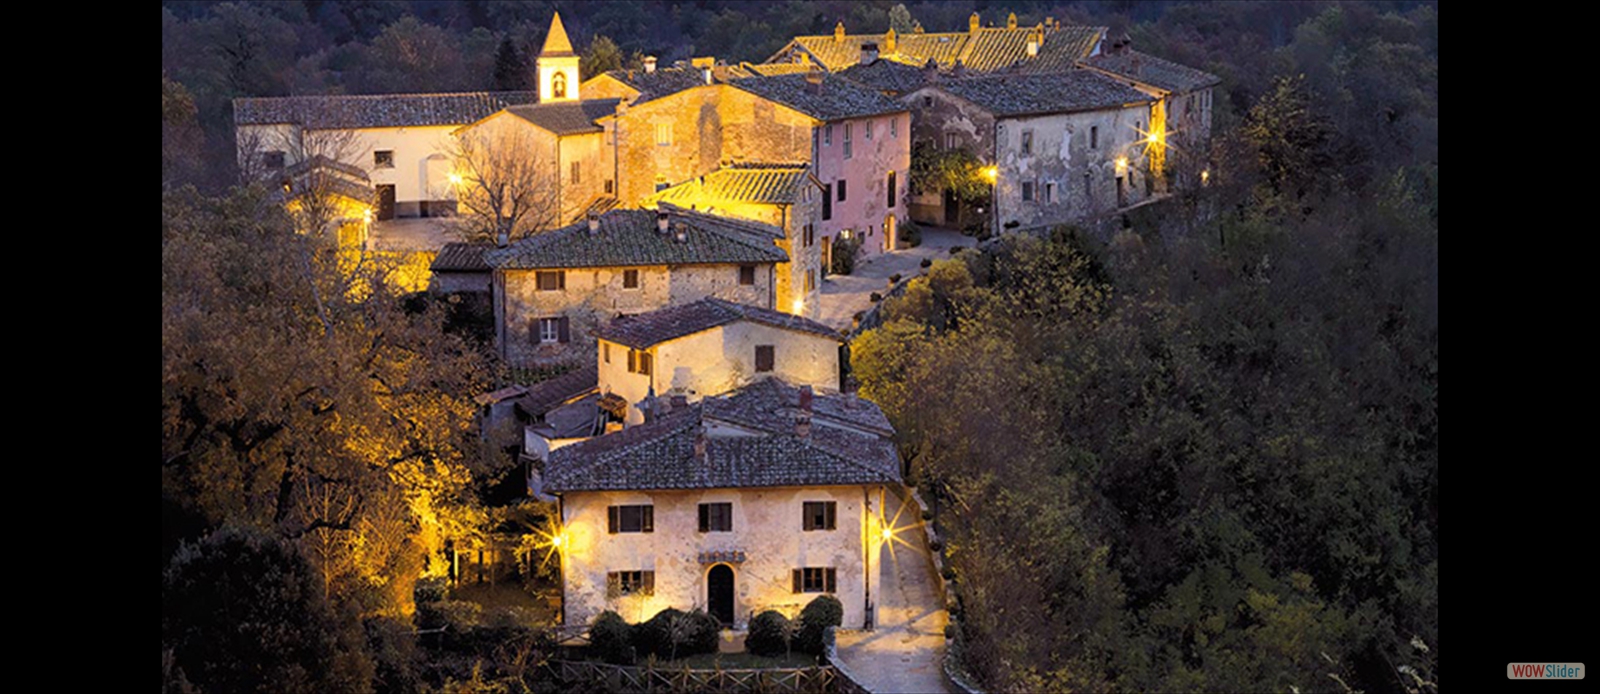 Villa Borro (Toscana - Itália)